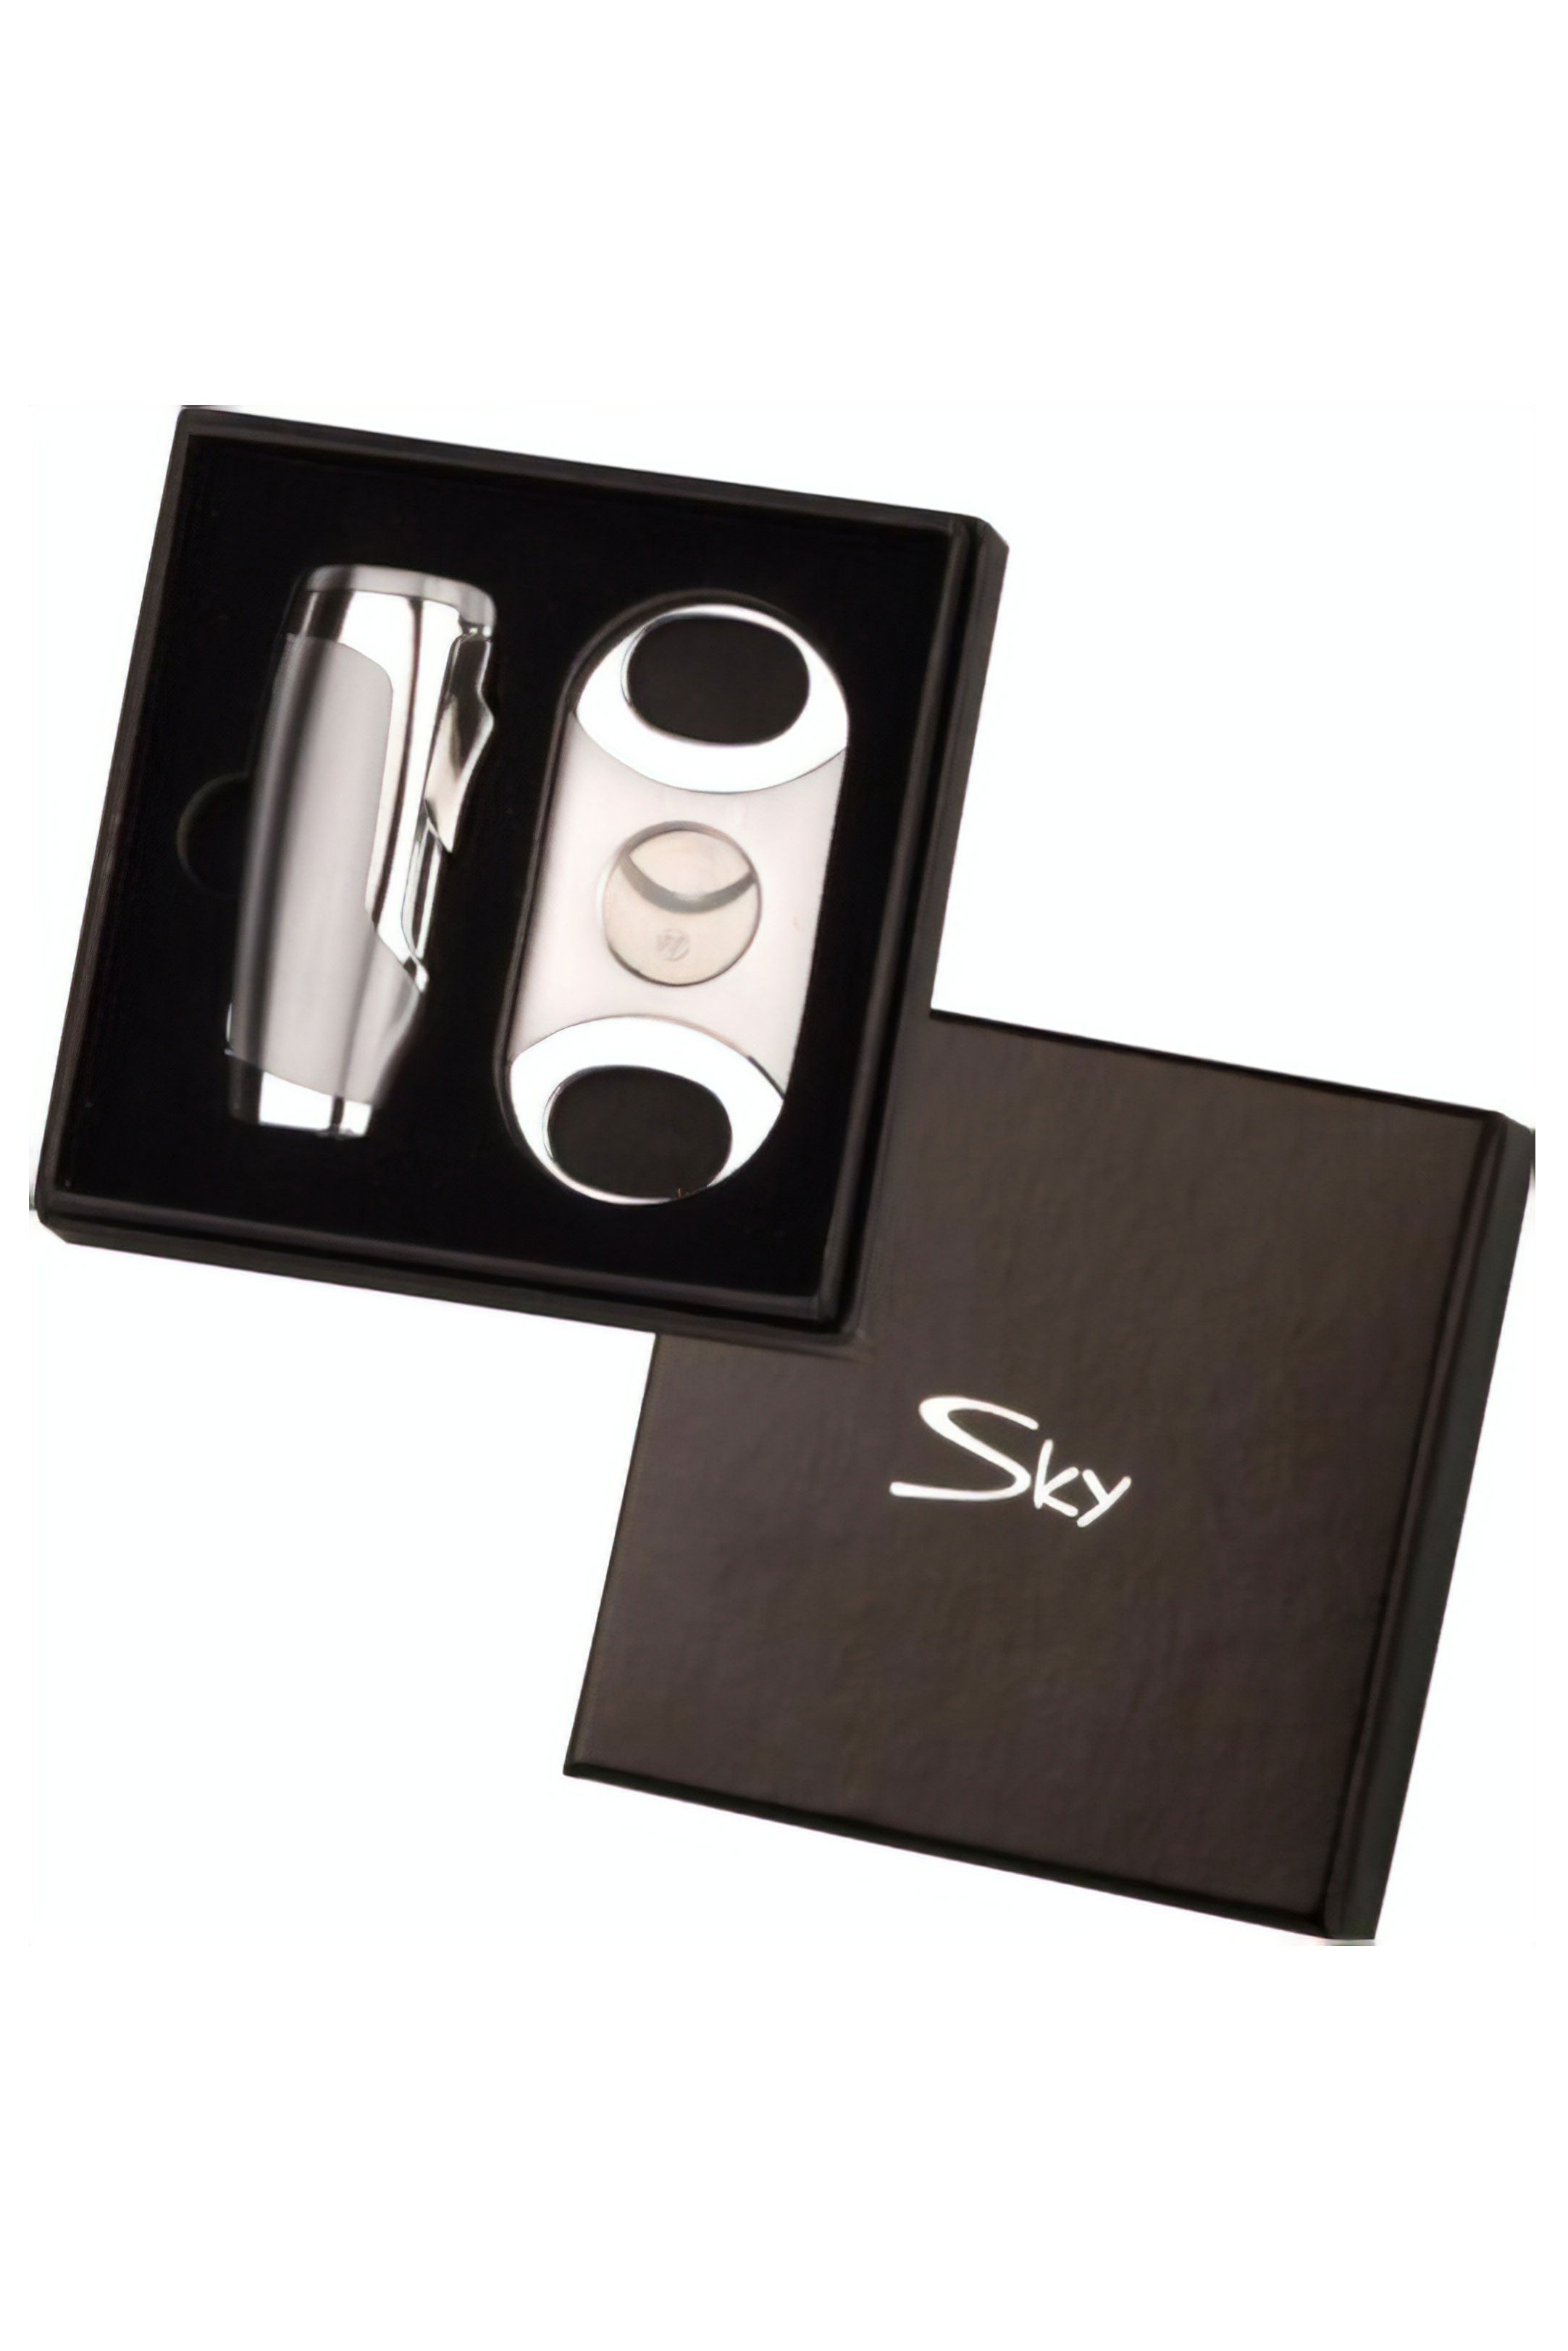 Sky Cigar Lighter and Cutter Set